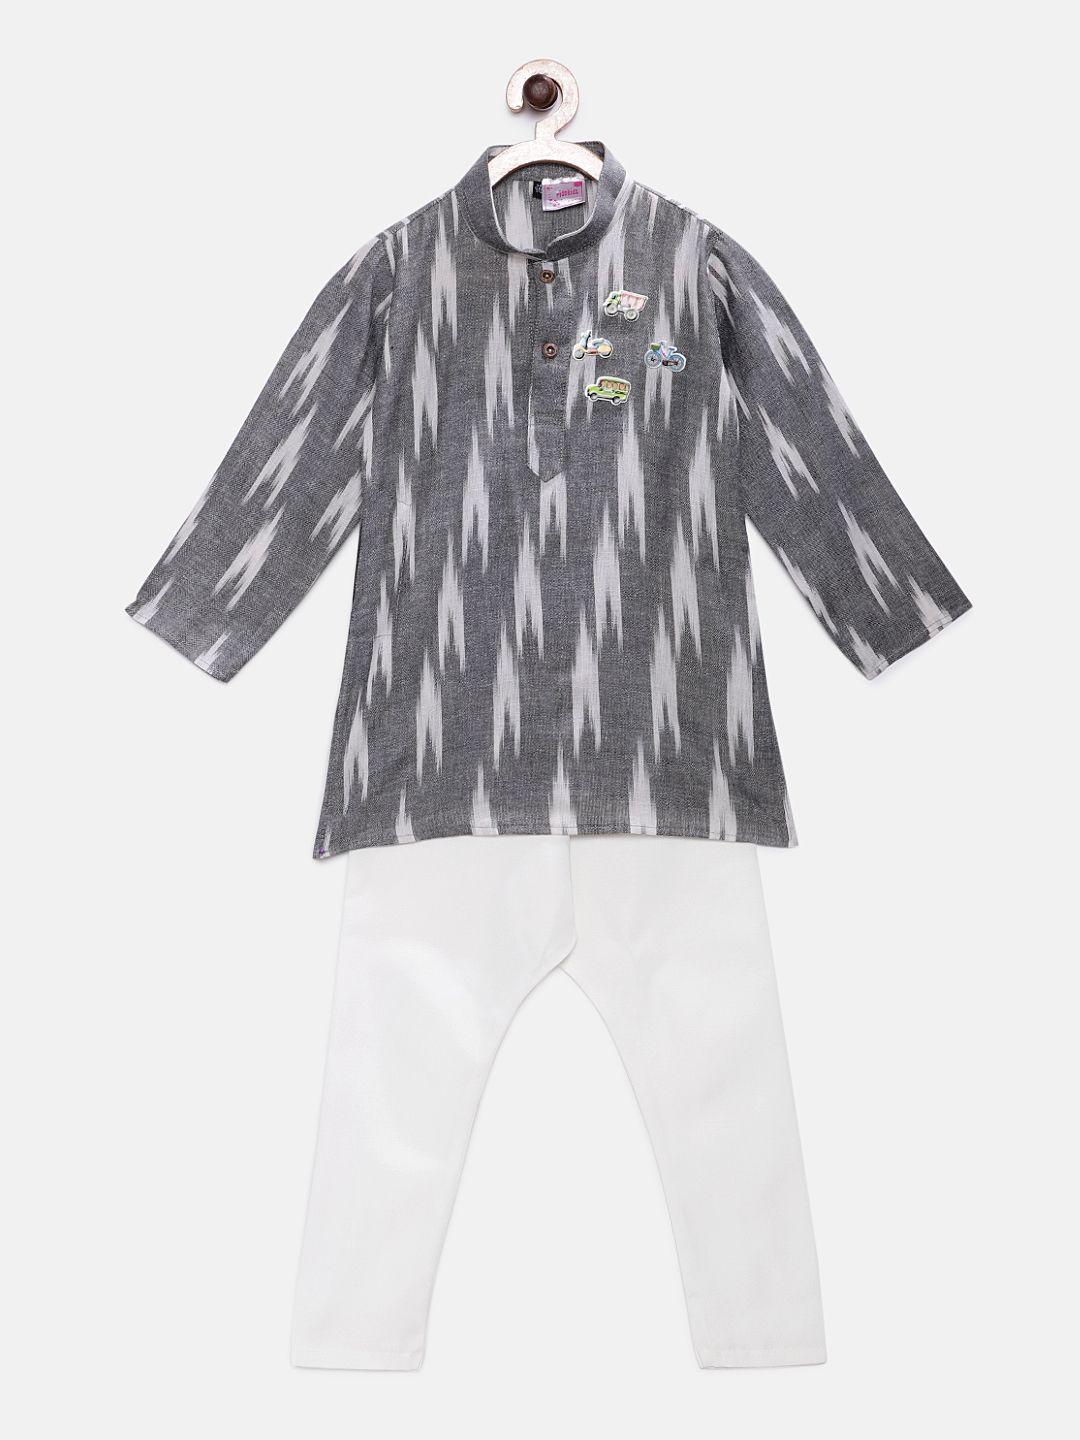 ridokidz-boys-grey-&-white-printed-kurta-with-pyjamas